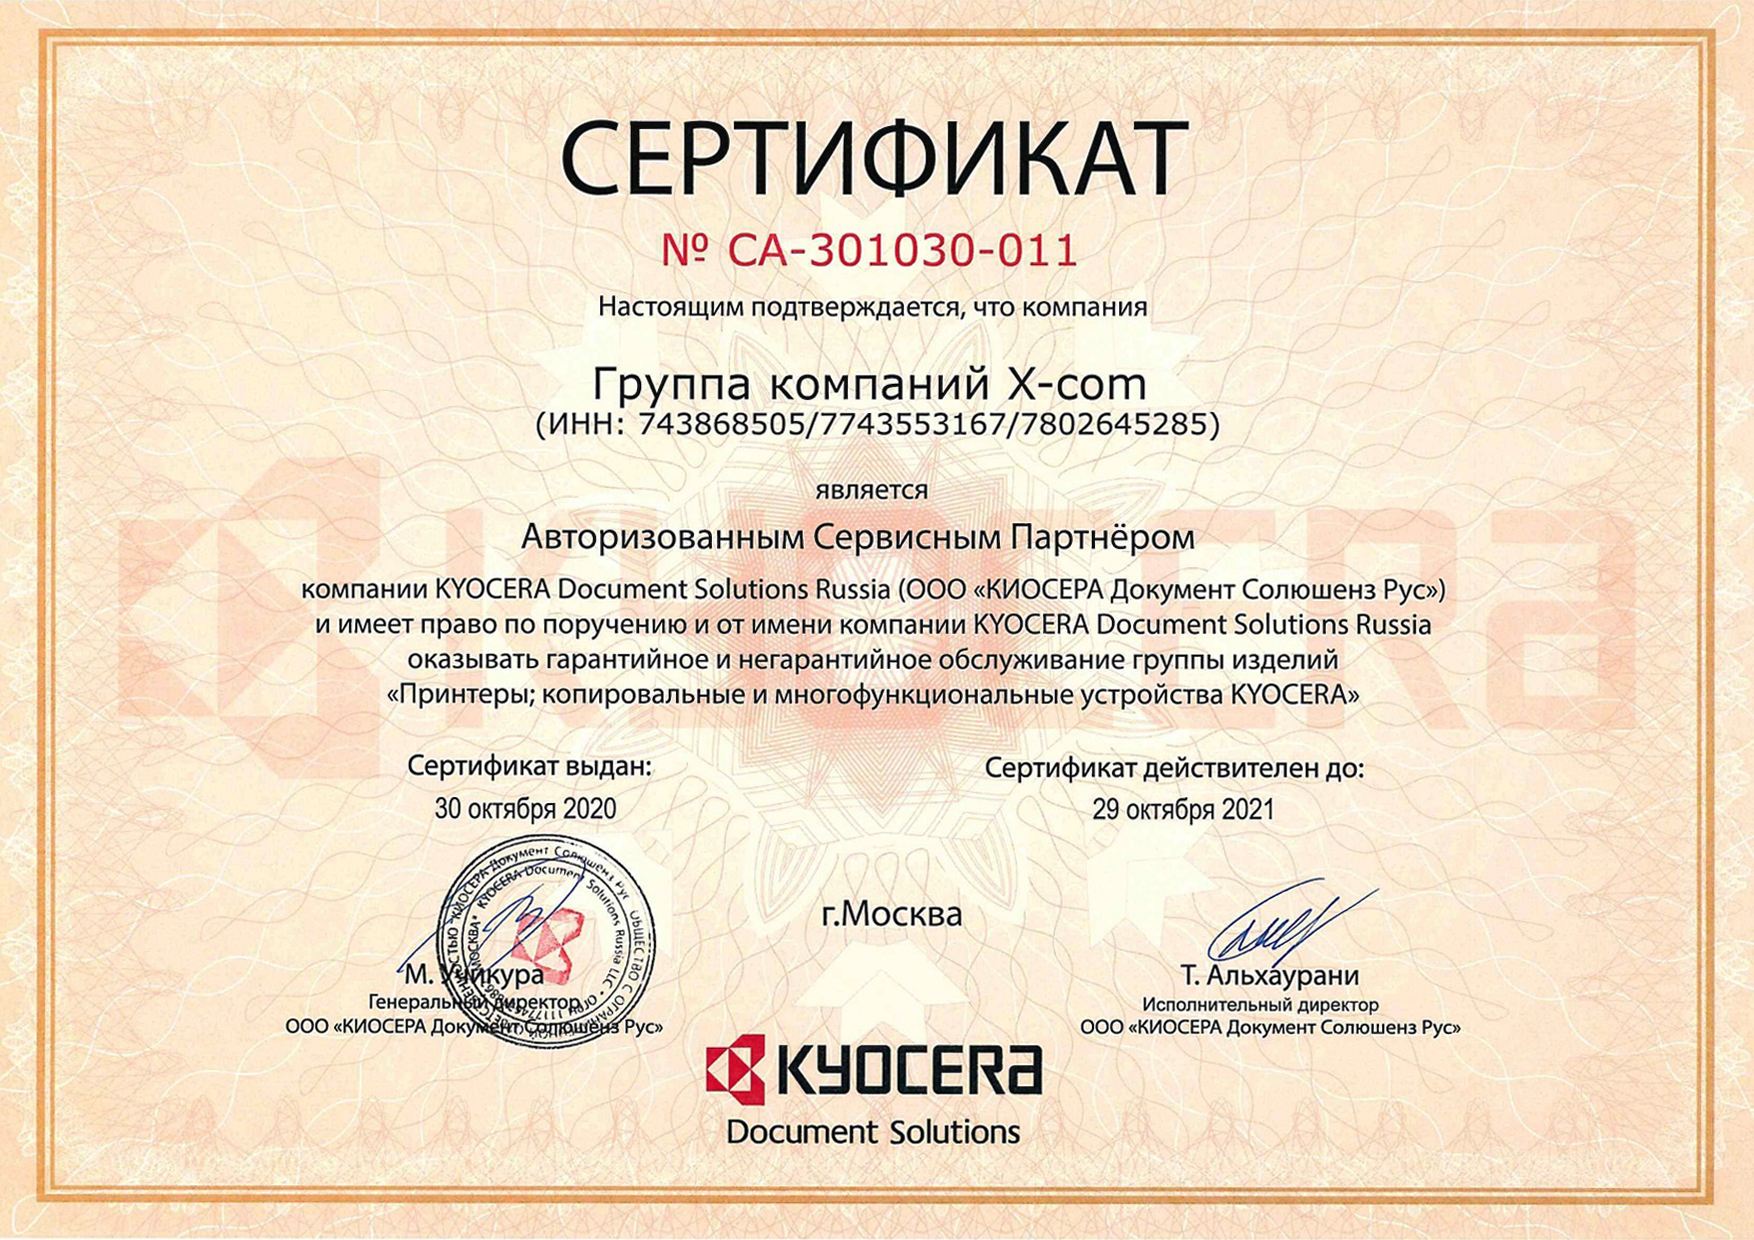 X-Com – сертифицированный сервисный партнер Kyocera в России